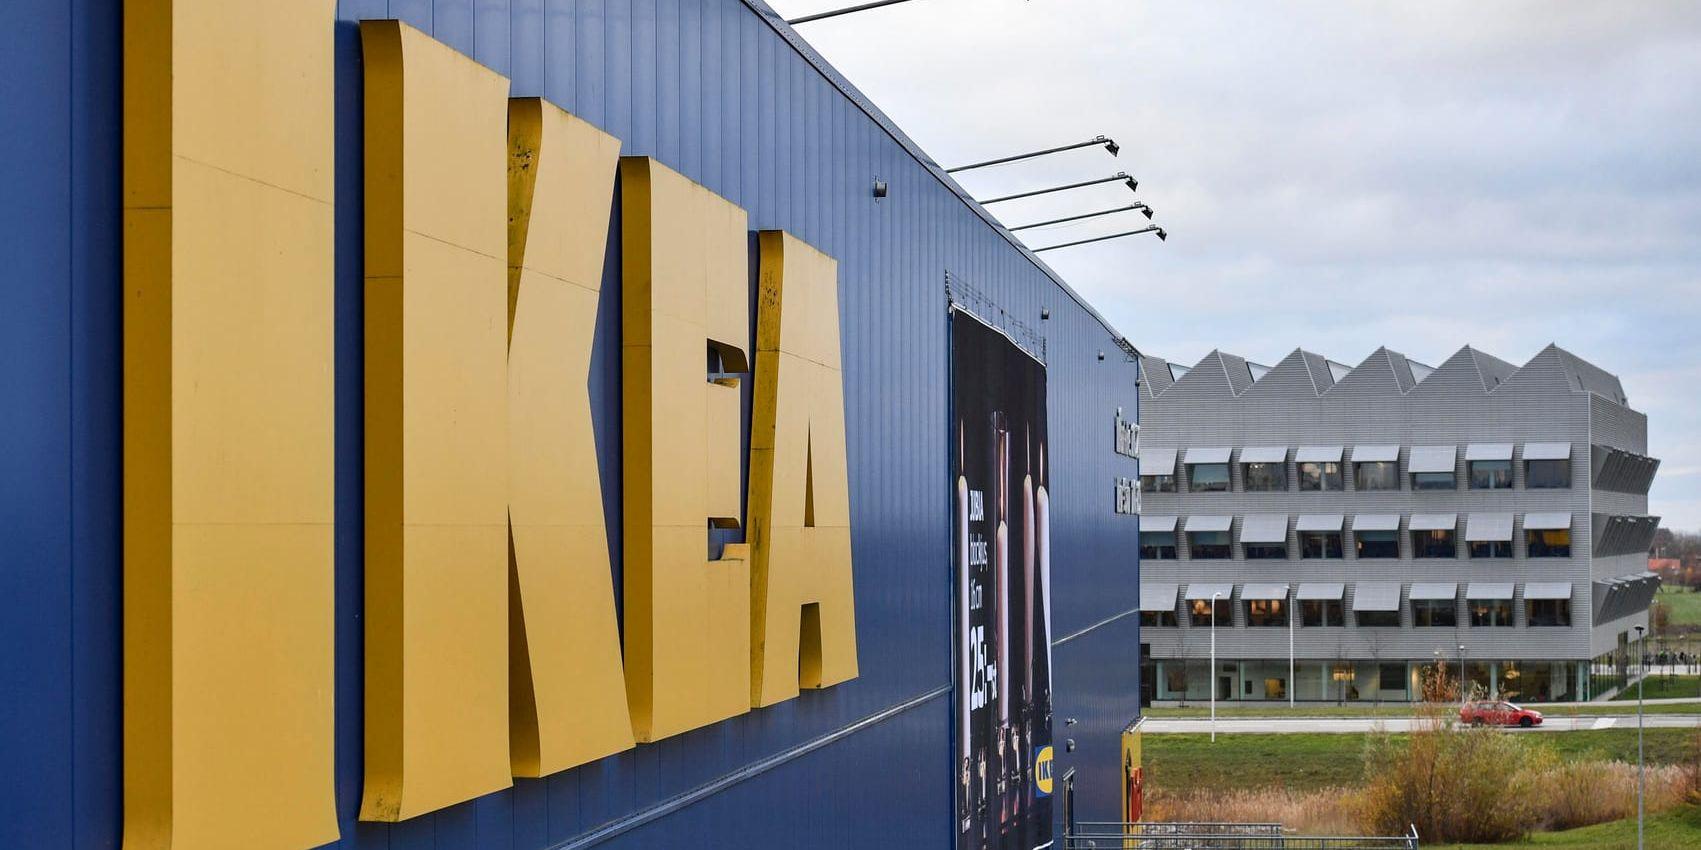 Ikeas expansion i Småland och Skåne hotas av bristande infrastruktur för tåg, enligt Pernilla Jonsson, vd för Ikea Älmhult. Arkivbild.